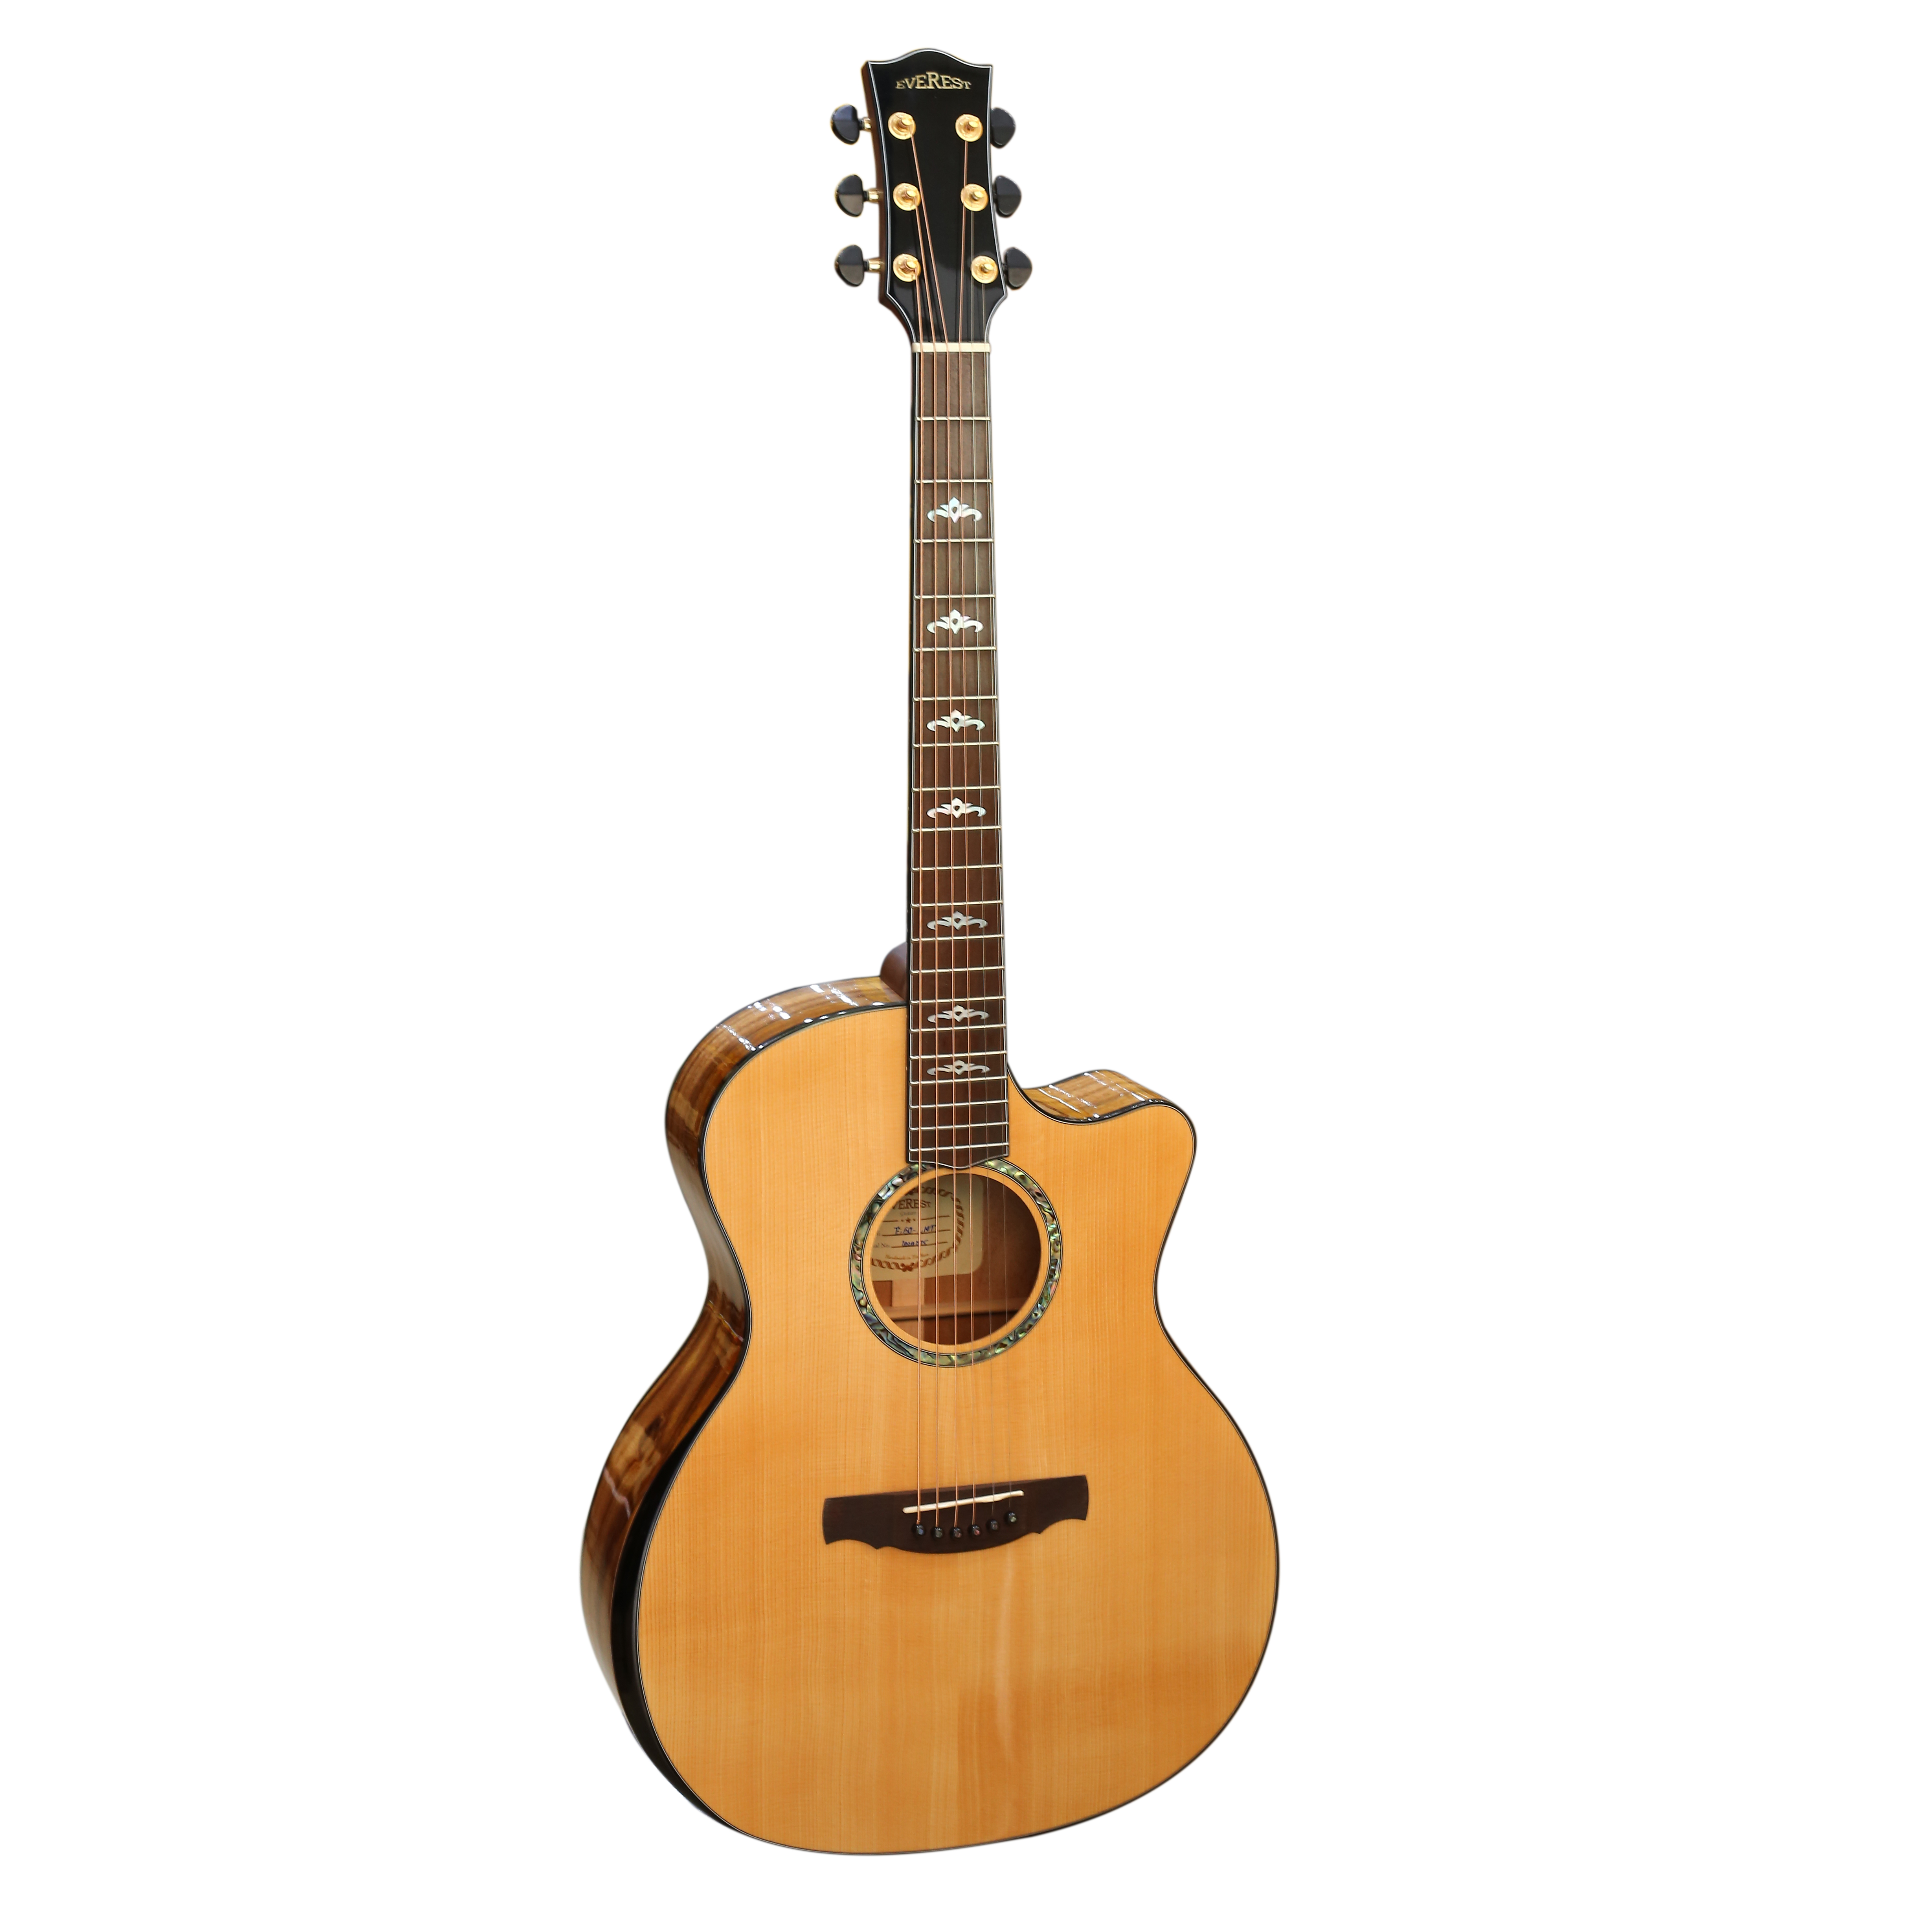 Đàn Guitar Acoustic E60LMT (Full solid) - Gỗ Nguyên Tấm